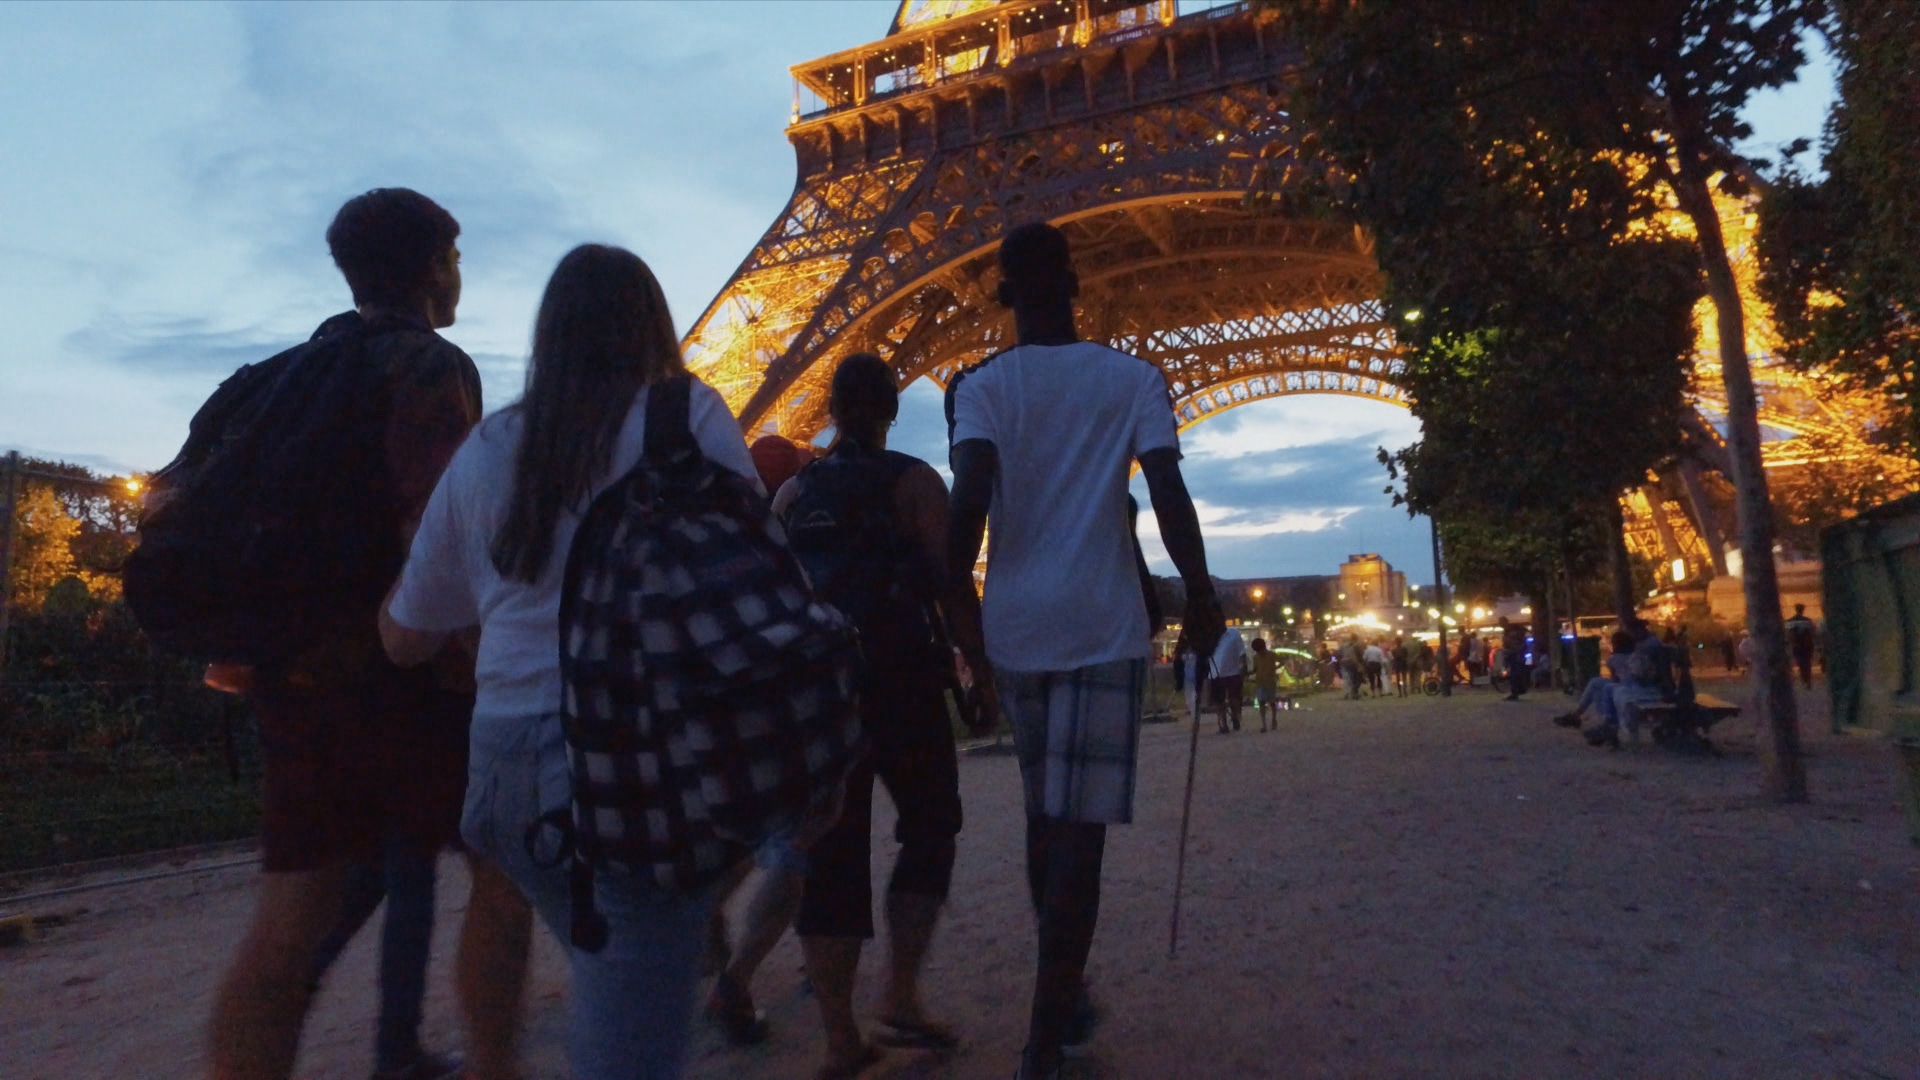 À la nuit tombante, les jeunes arrivent au pied de la tour Eiffel